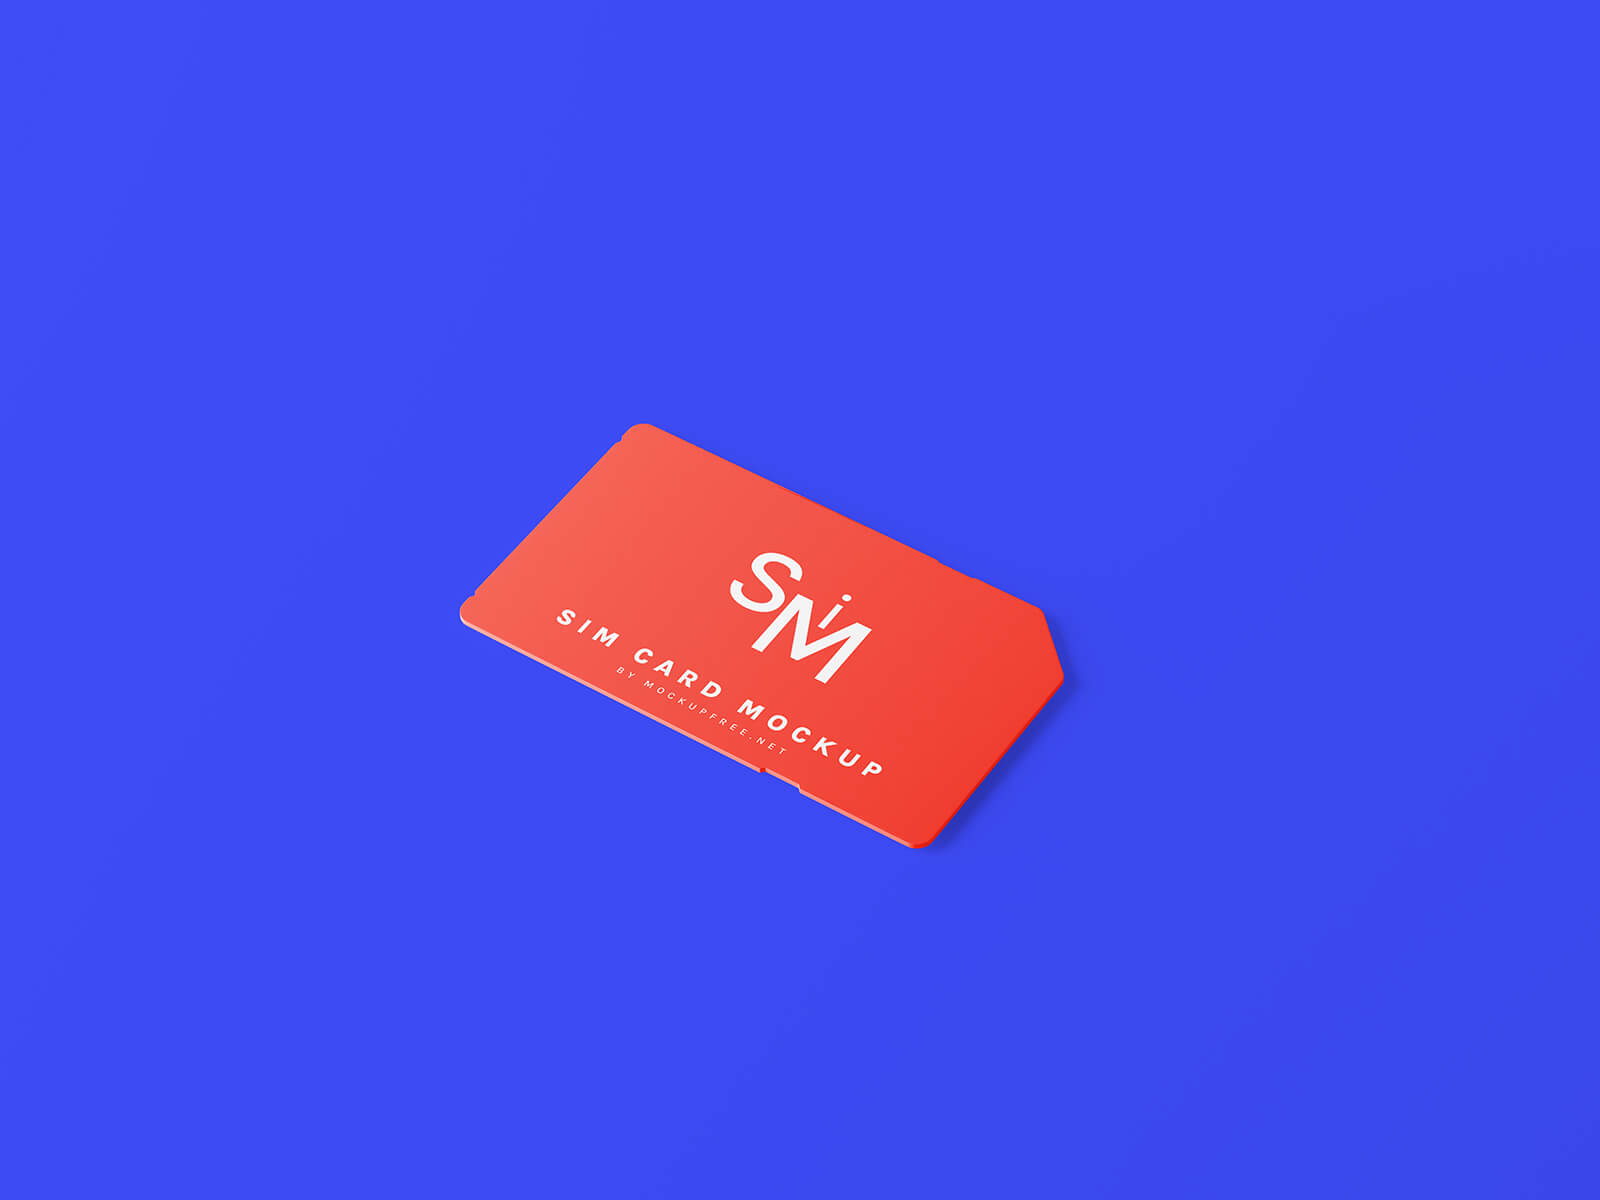 7 Free Mobile SIM Card Mockup Files